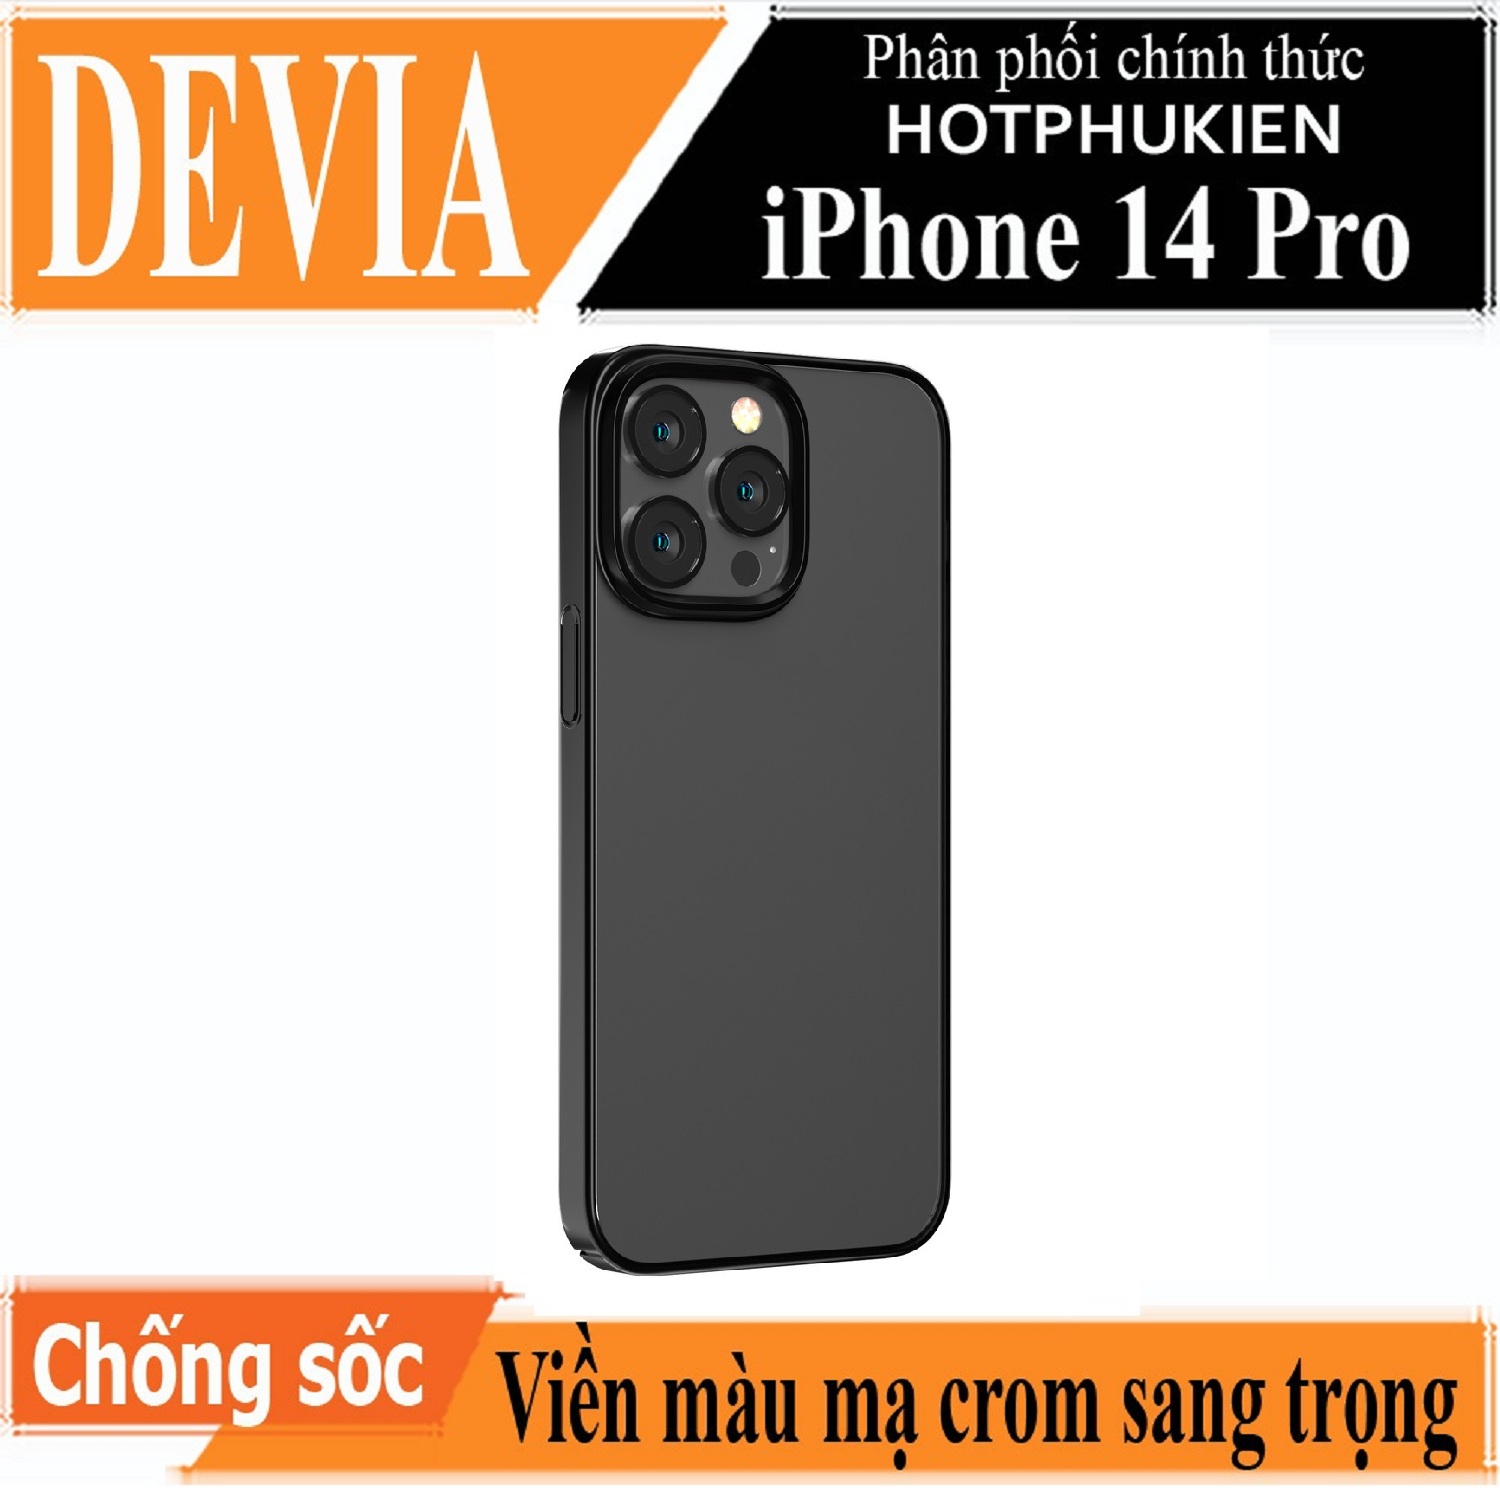 Ốp lưng chống sốc viền màu mạ crom cho iPhone 14 Pro (6.1 inch) hiệu DEVIA Crystal Series Shockproof Case